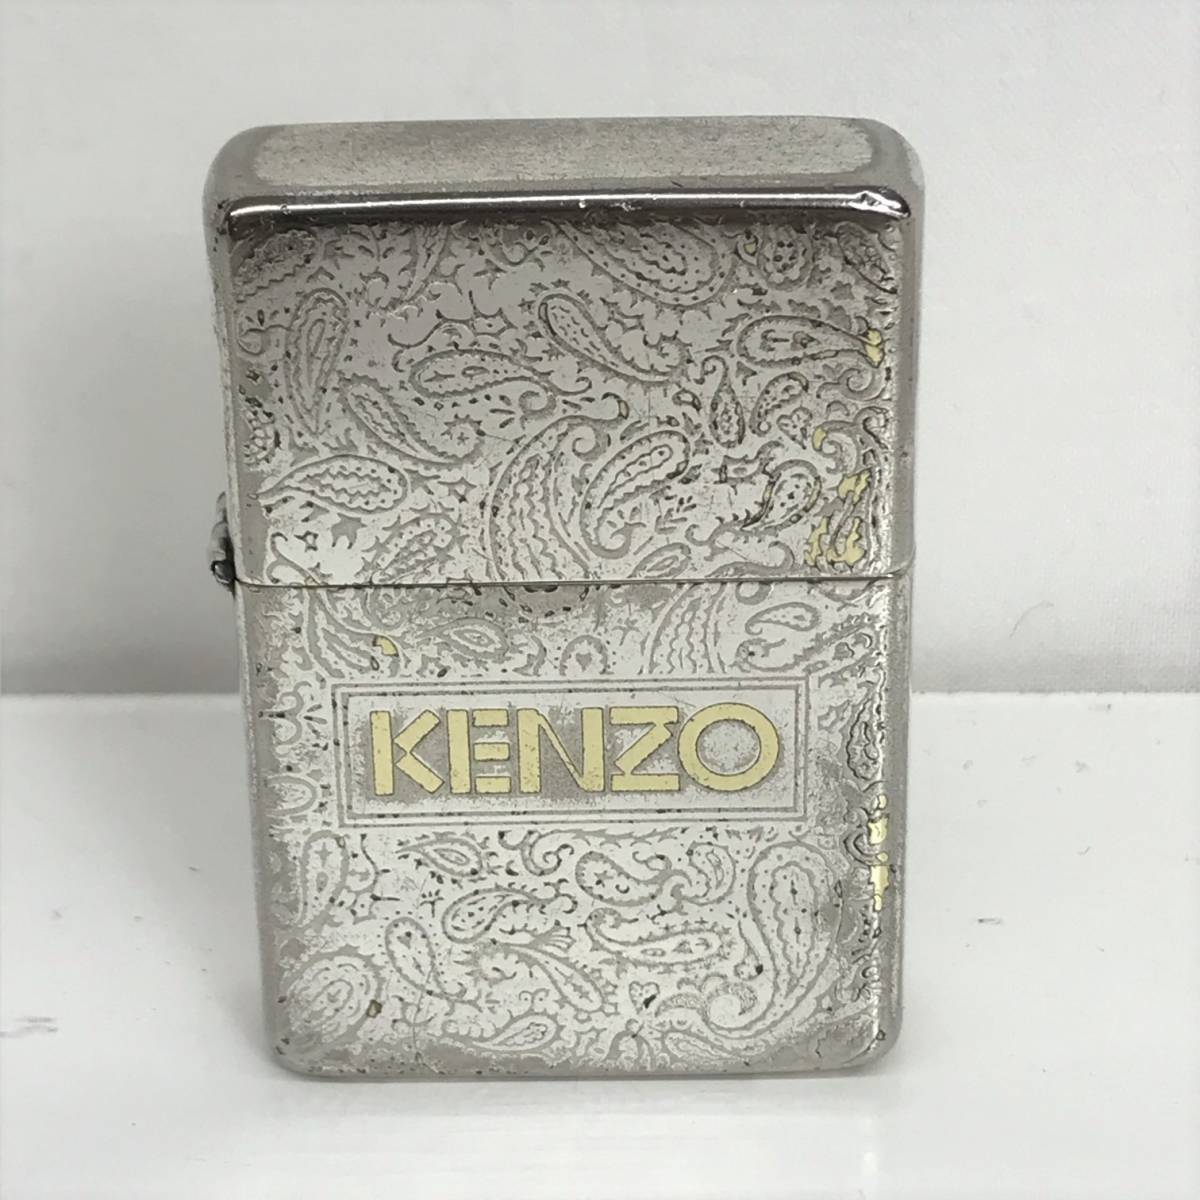 ヤフオク! -「kenzo」(Zippo) (ライター)の落札相場・落札価格